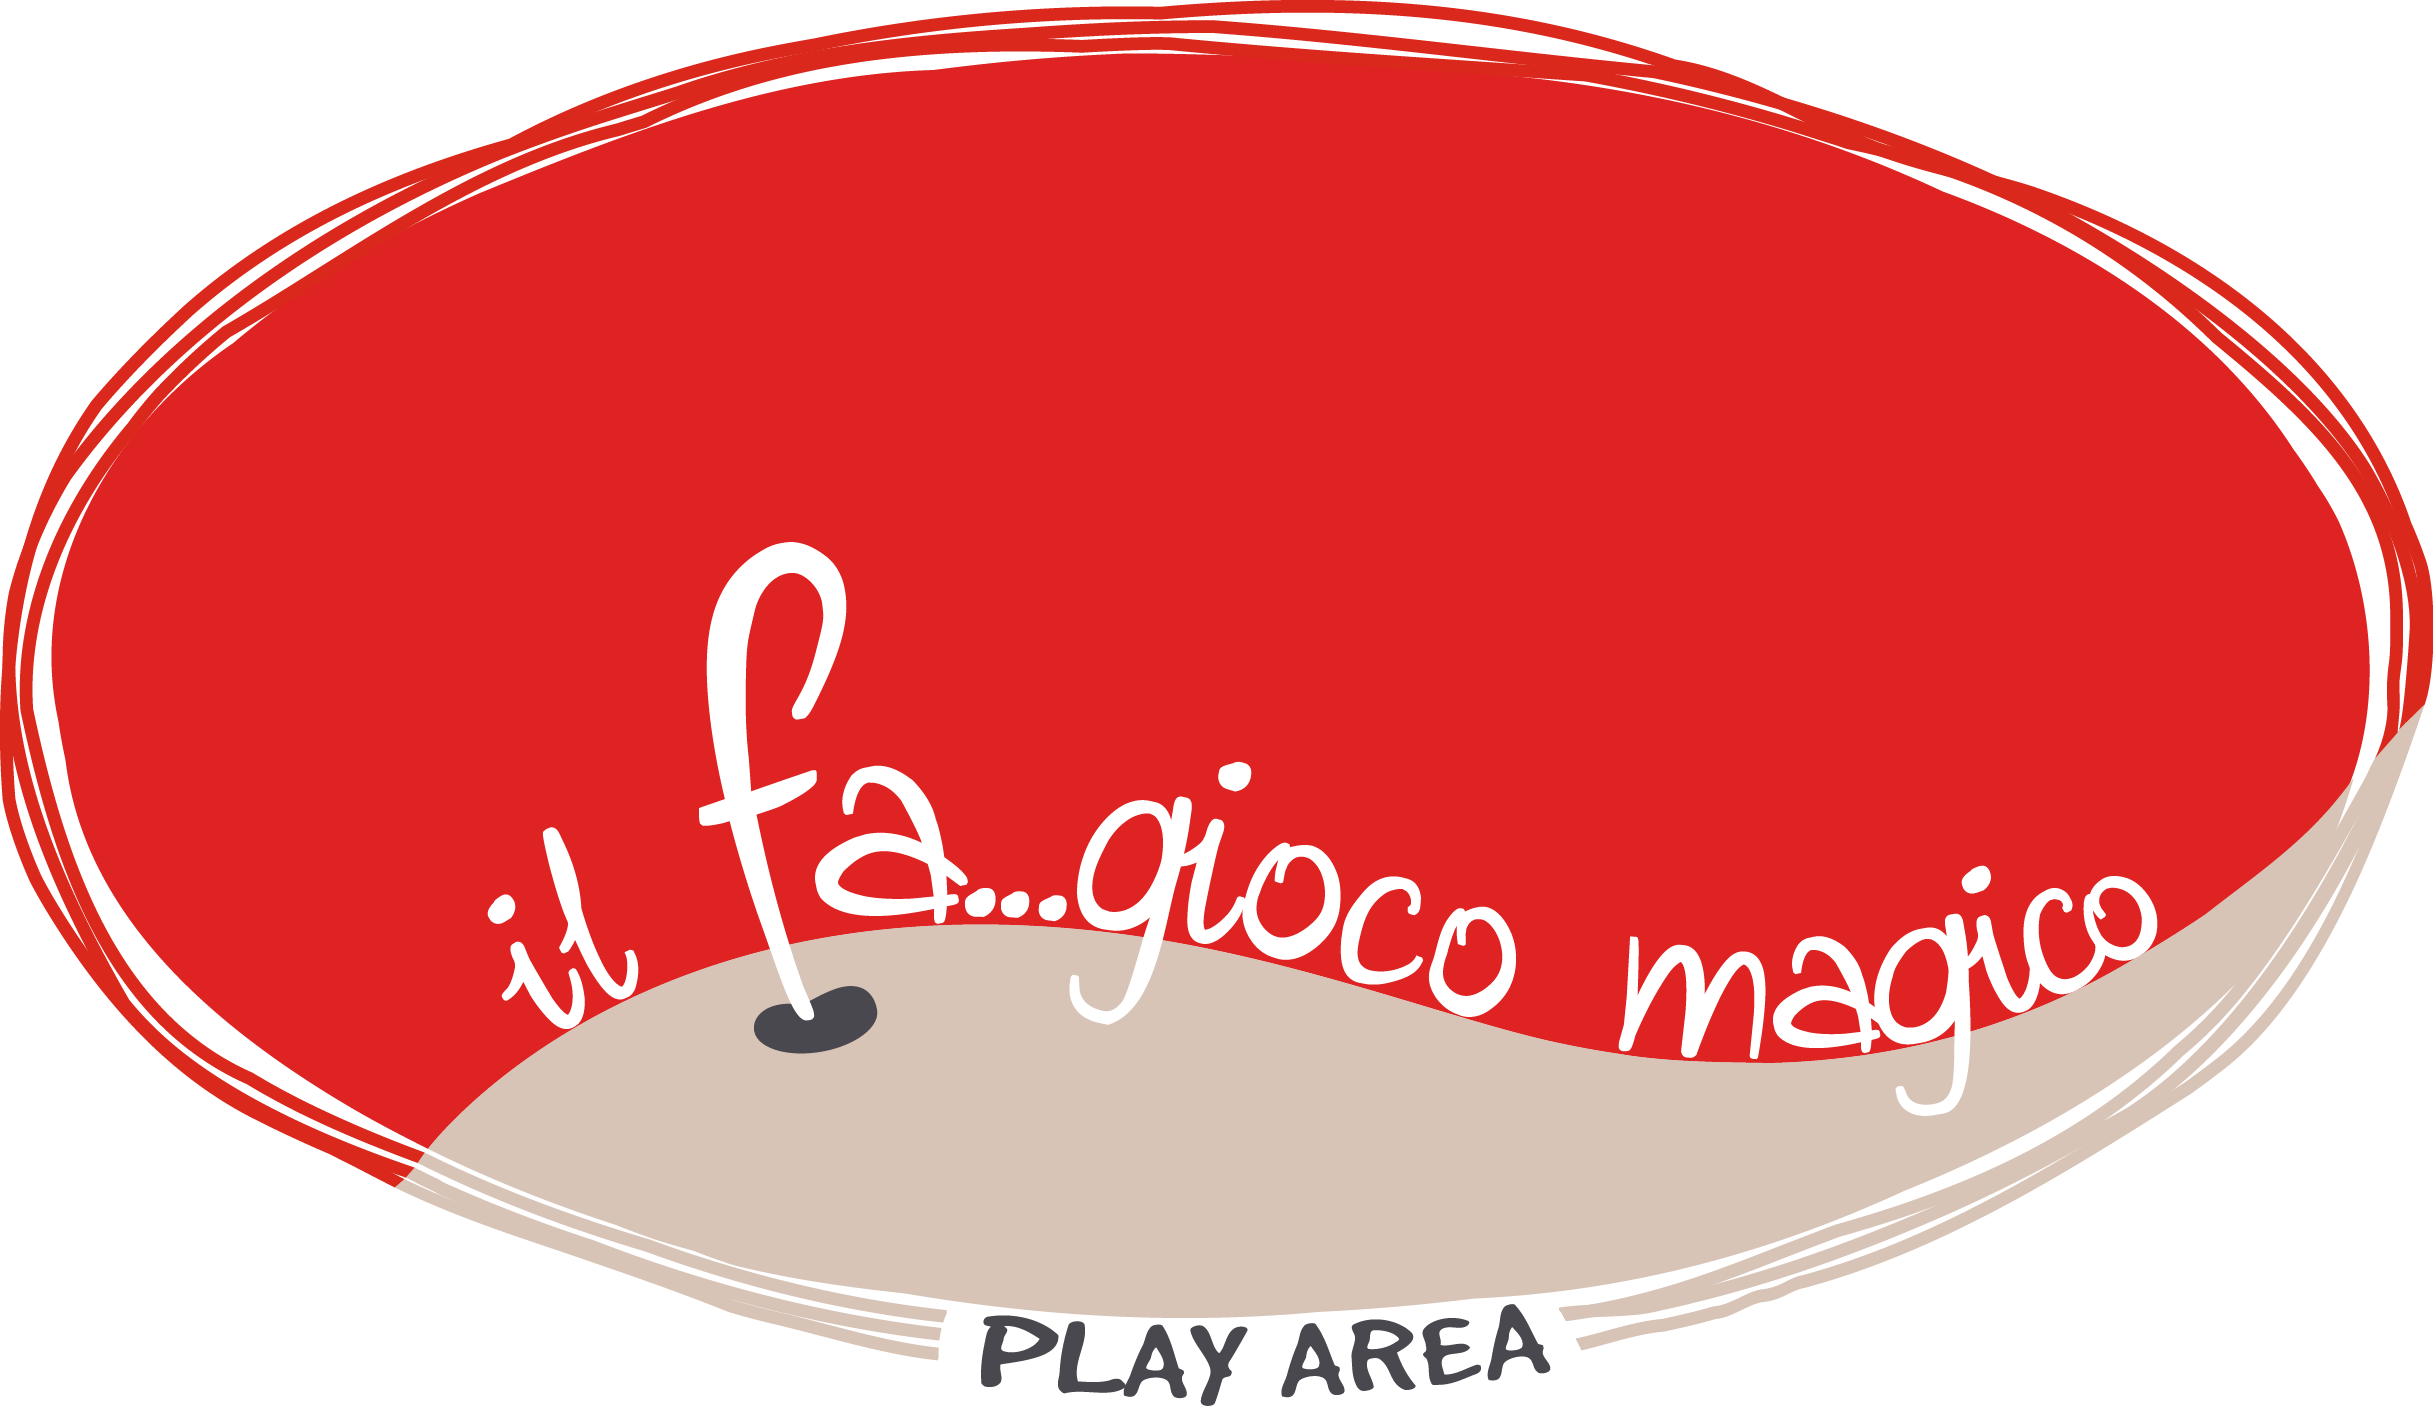 ilfagiolo magico_RGB_trasp_play.png